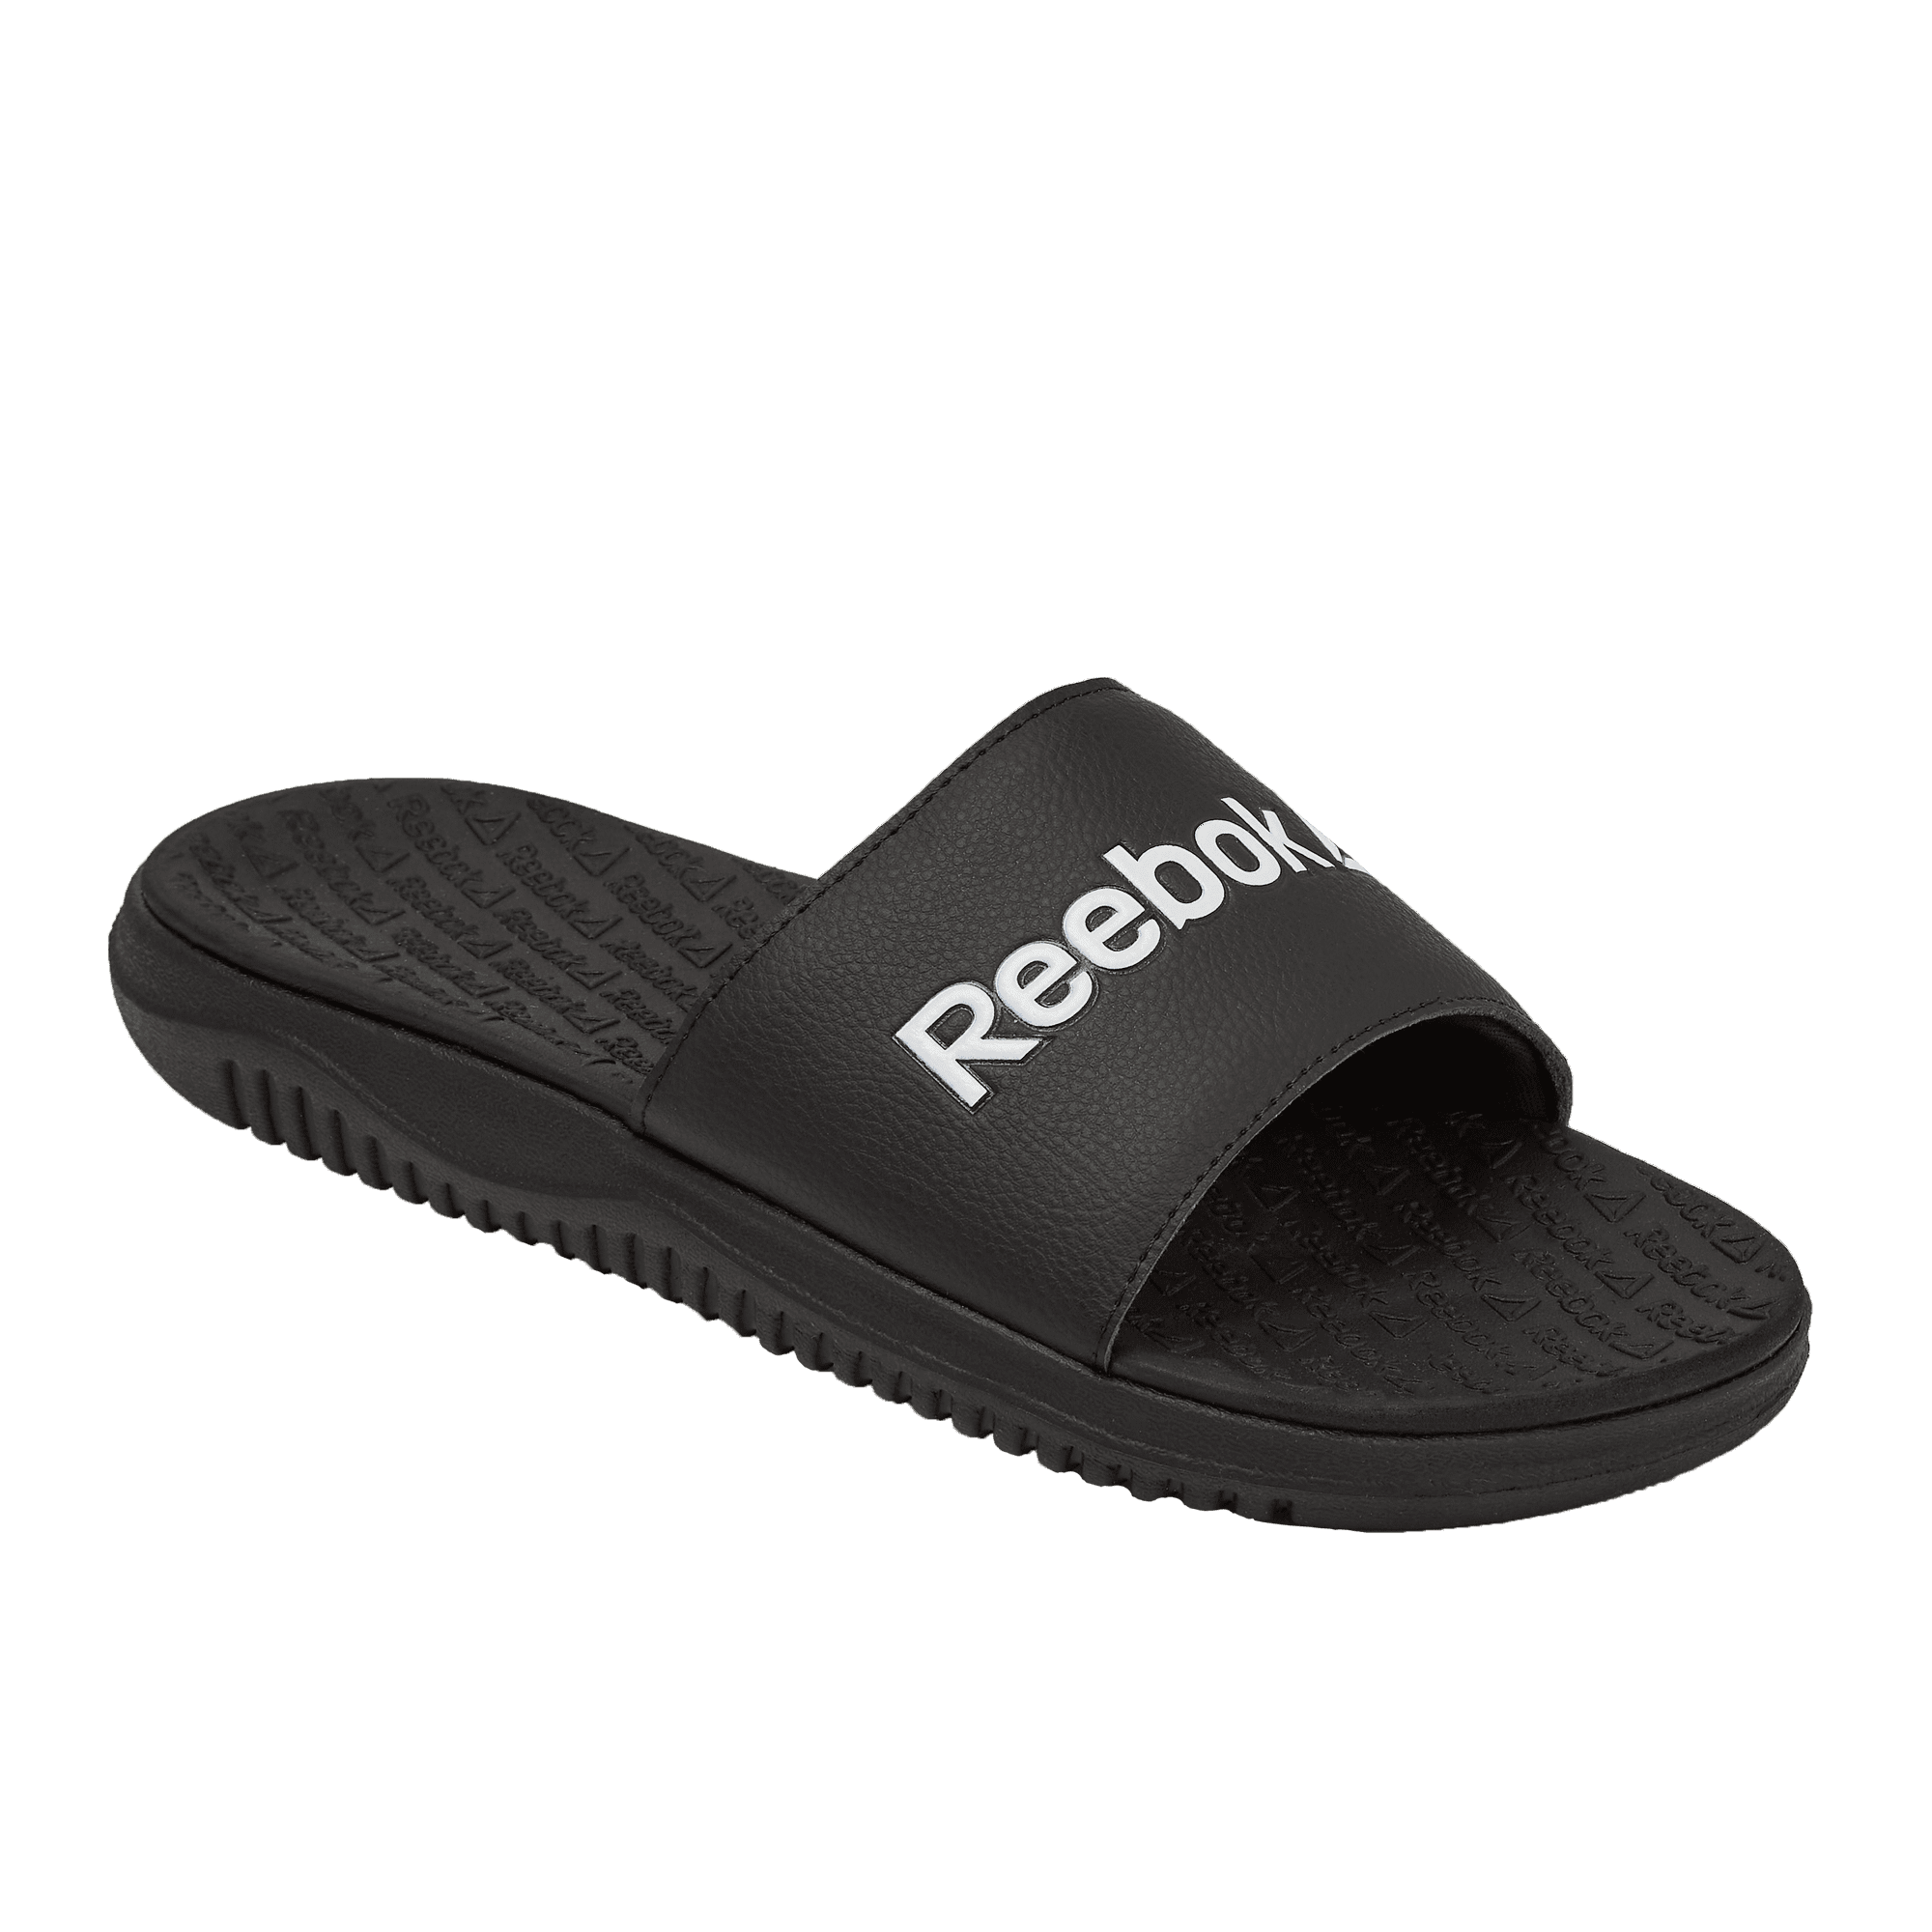 Reebok Women's Dual Comfort Sandals Walmart.com